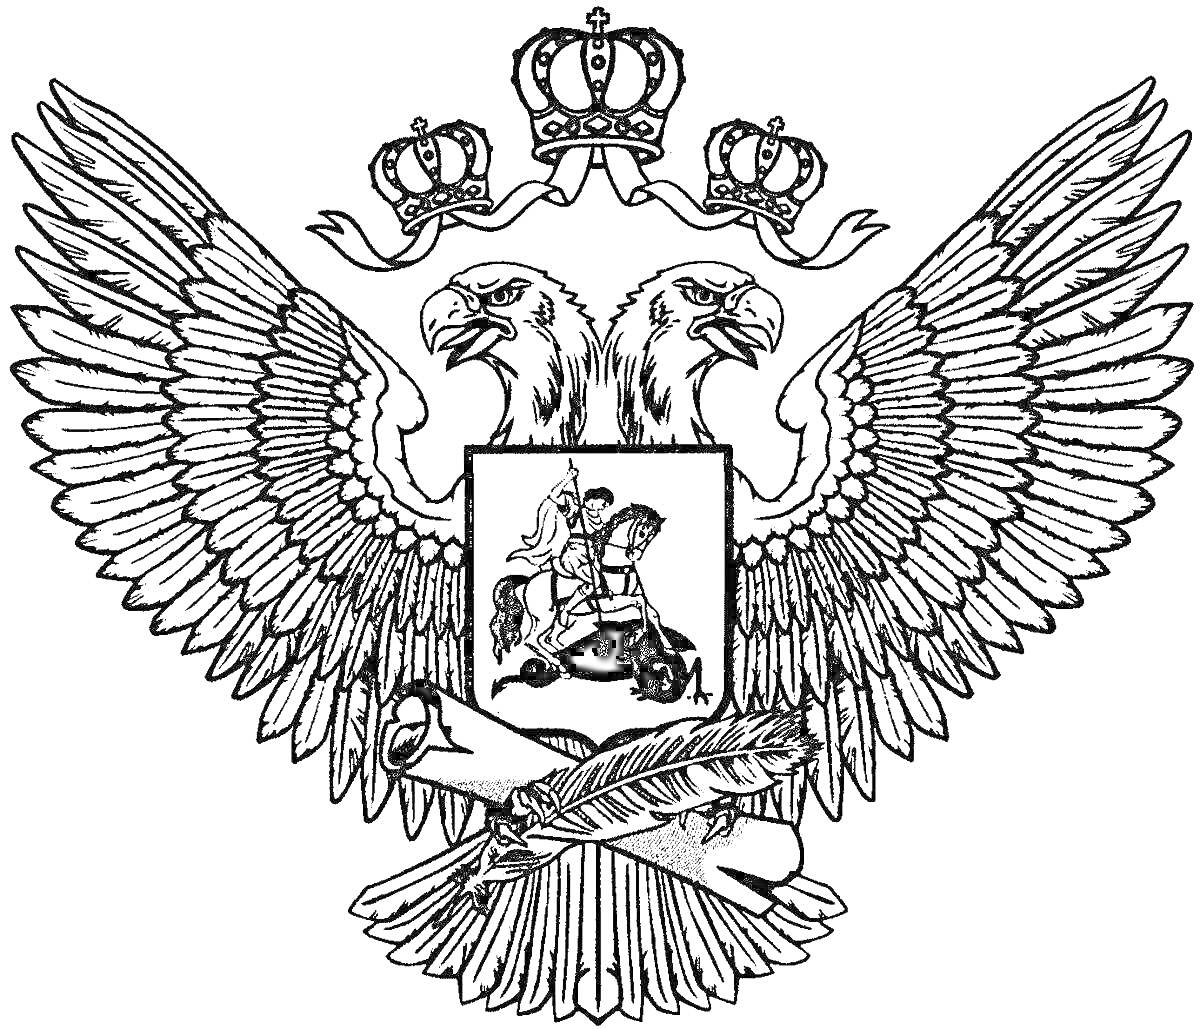 РаскраскаГерб города Орла с двумя орлами, три короны, всадник с копьем на щите, свиток с пером